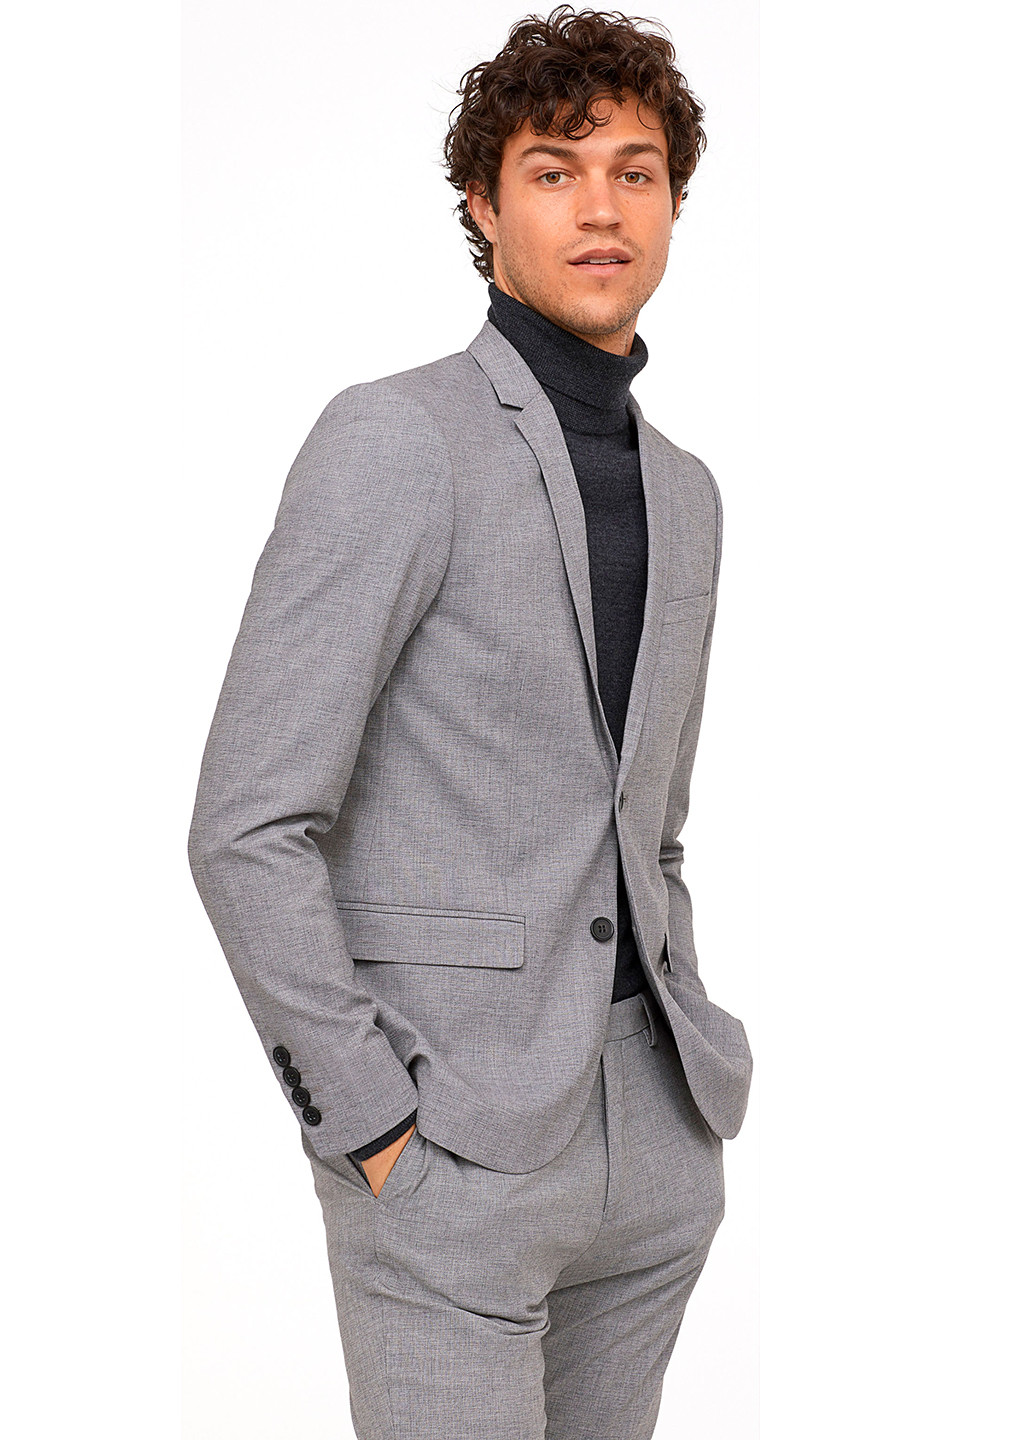 Пиджак H&M меланж светло-серый деловой